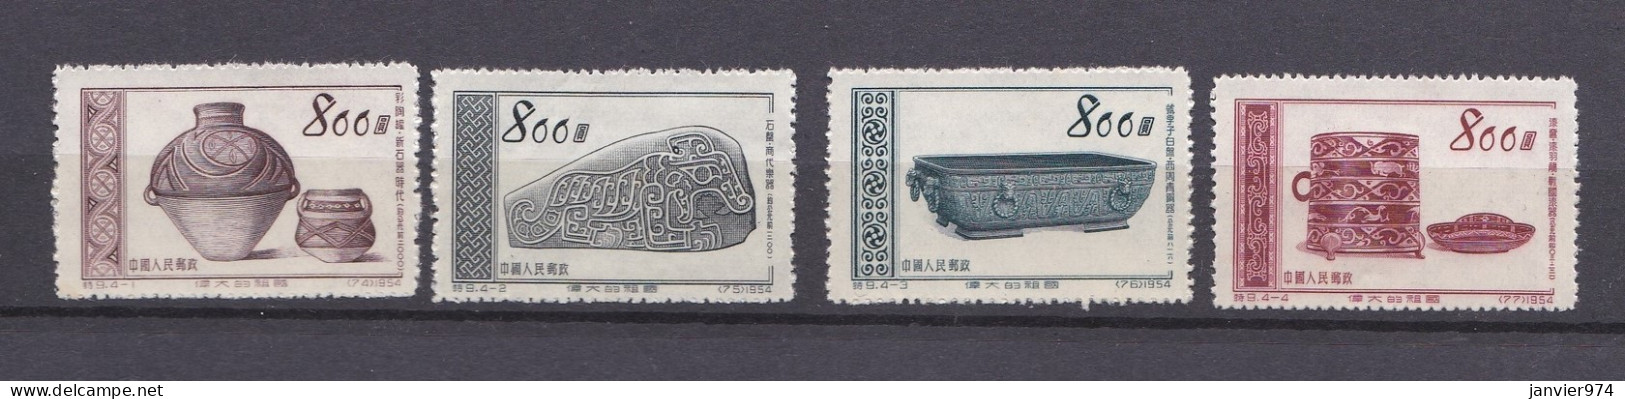 Chine 1954 , La Serie Complete, Trésors D'art Anciens, 4 Timbres Neufs , 249 à 252 - Unused Stamps